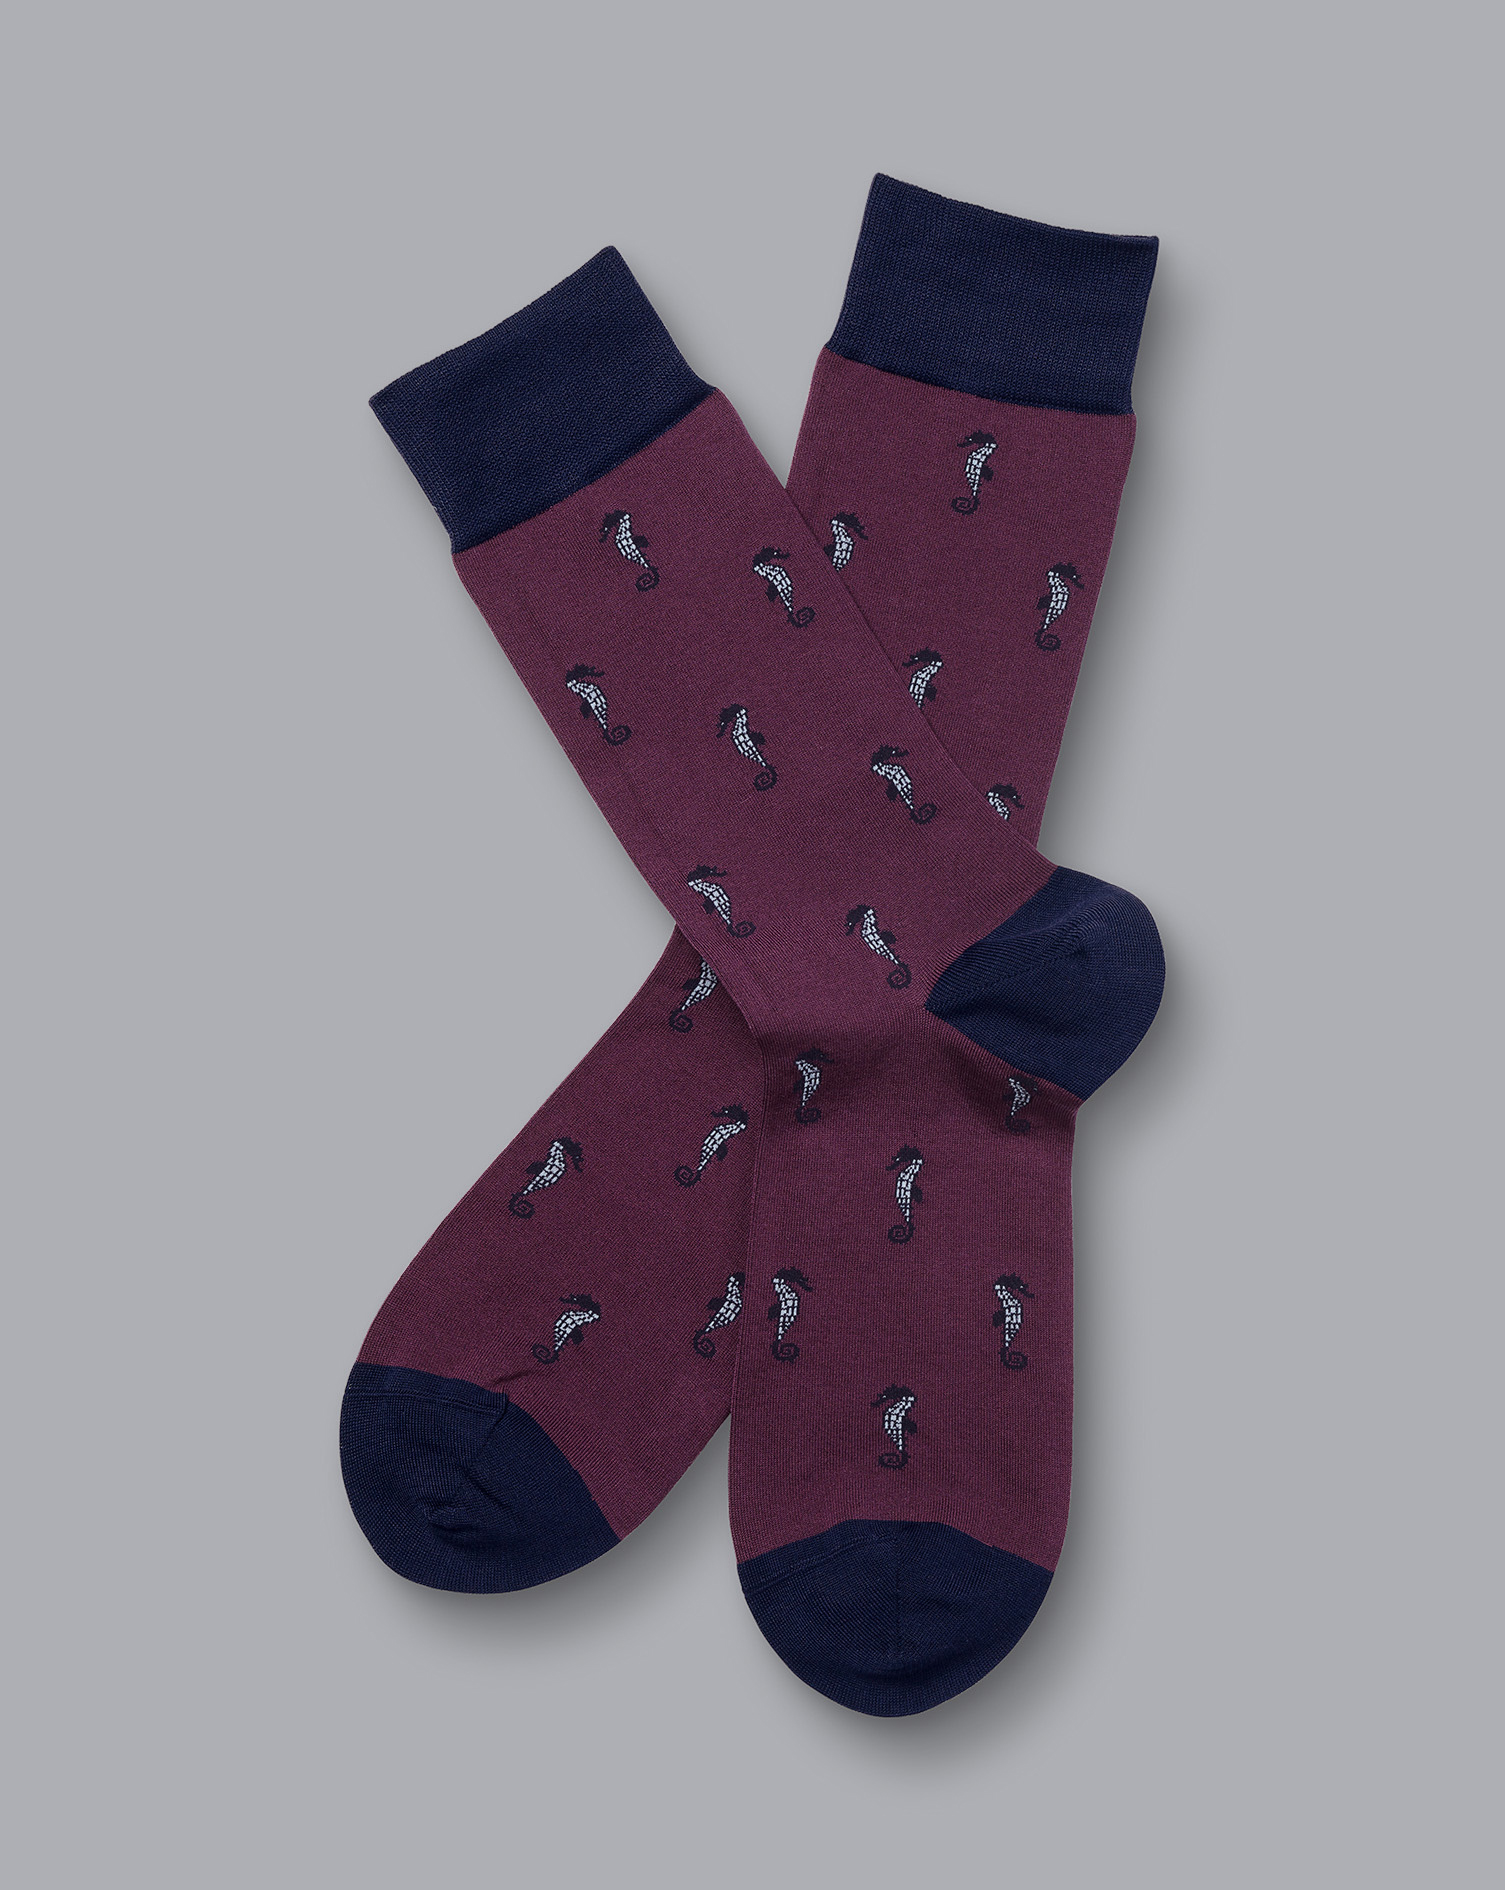 Men's Charles Tyrwhitt Seahorse Motif Socks - Blackberry Purple Size 6-10
